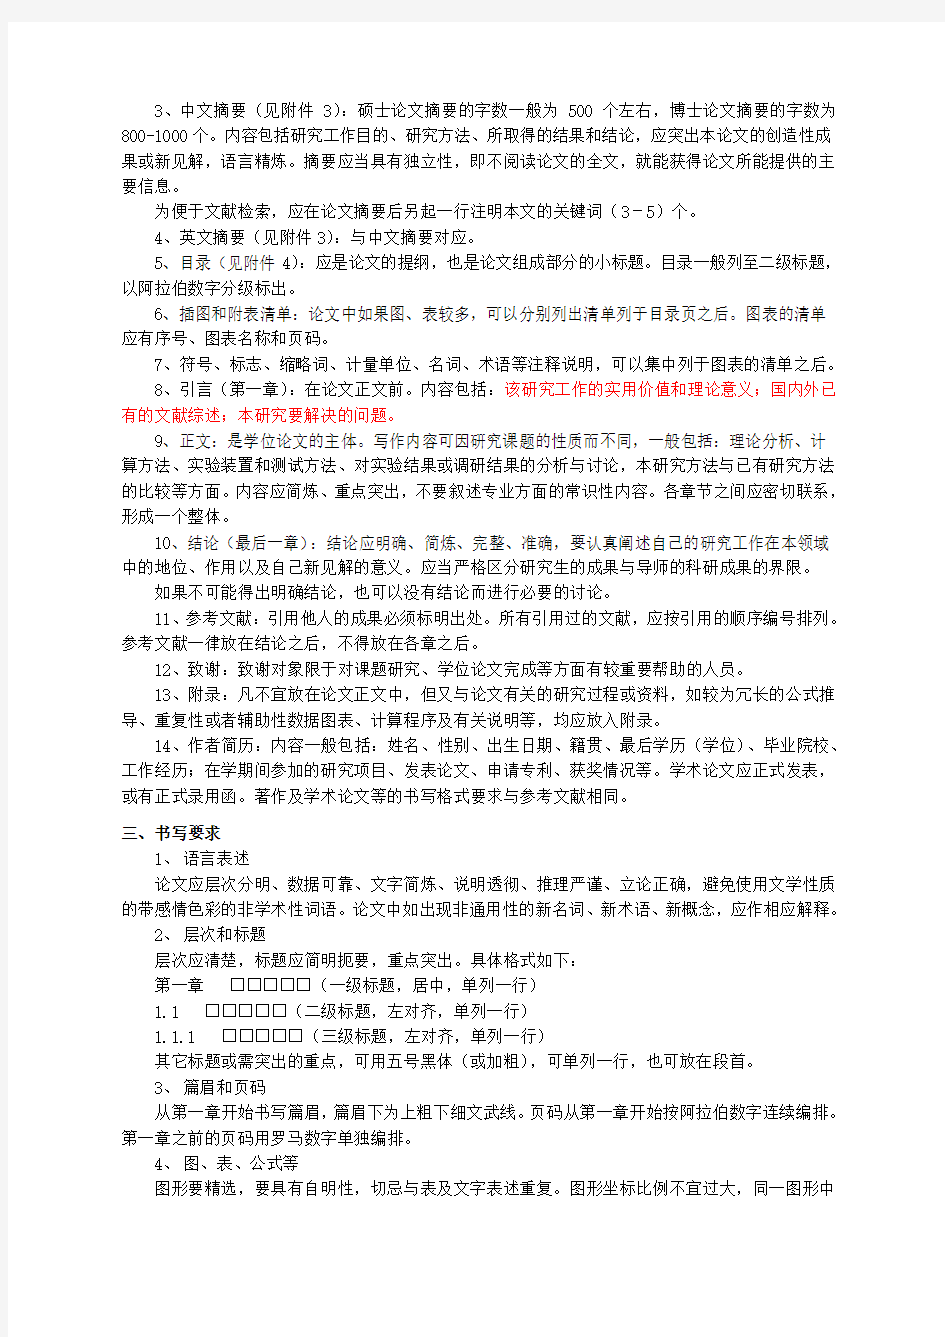 中国农业大学学位论文格式、书写规范(最新版).